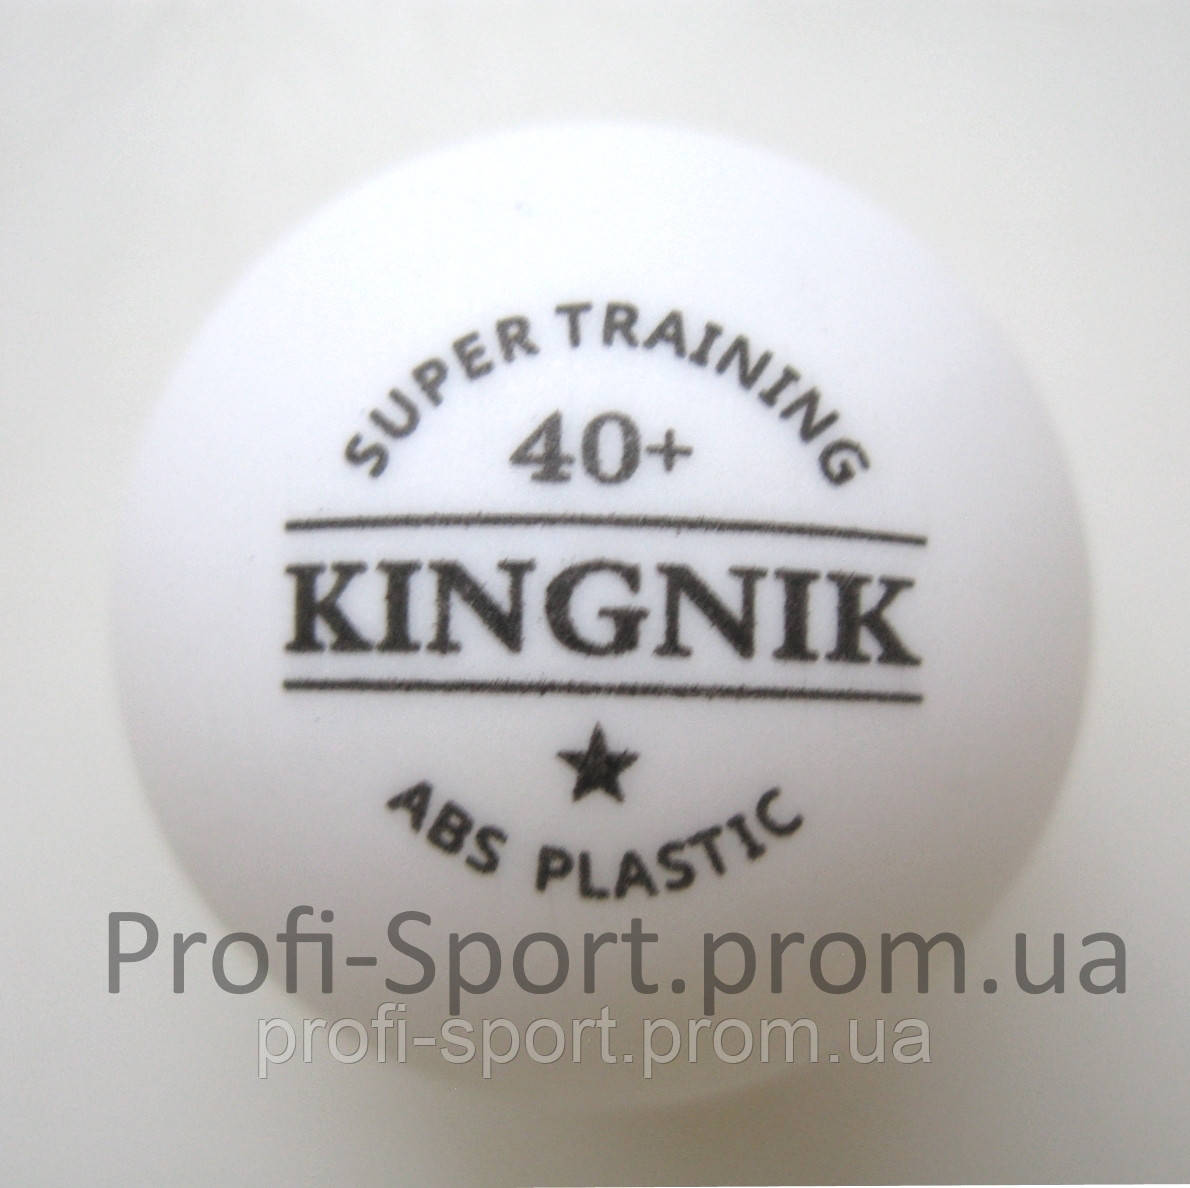 Kingnik 40+ 1* пластикові м'ячі настільний теніс